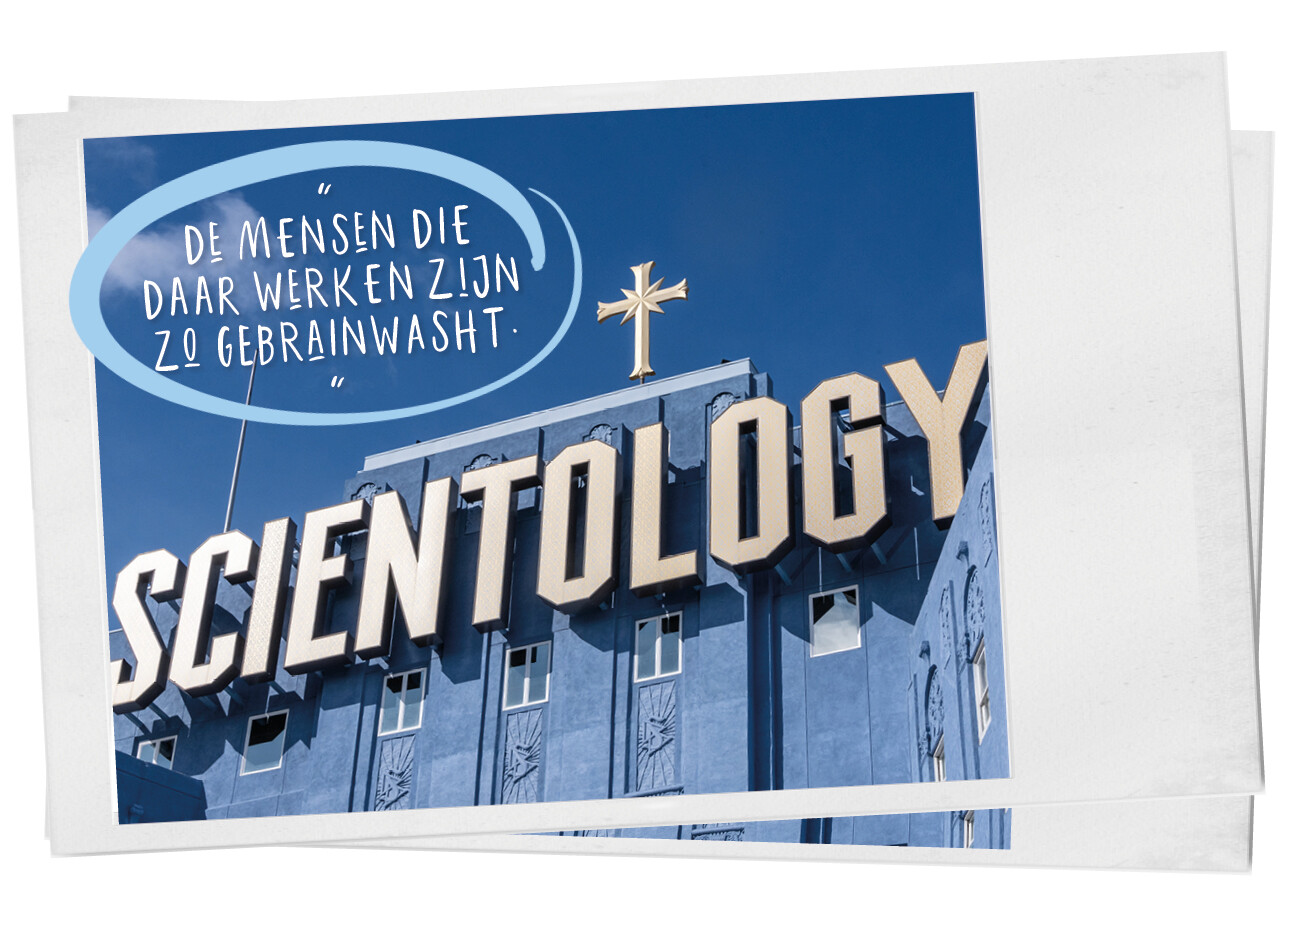 Ervaringen van mensen die werkte in de Scientology kerk